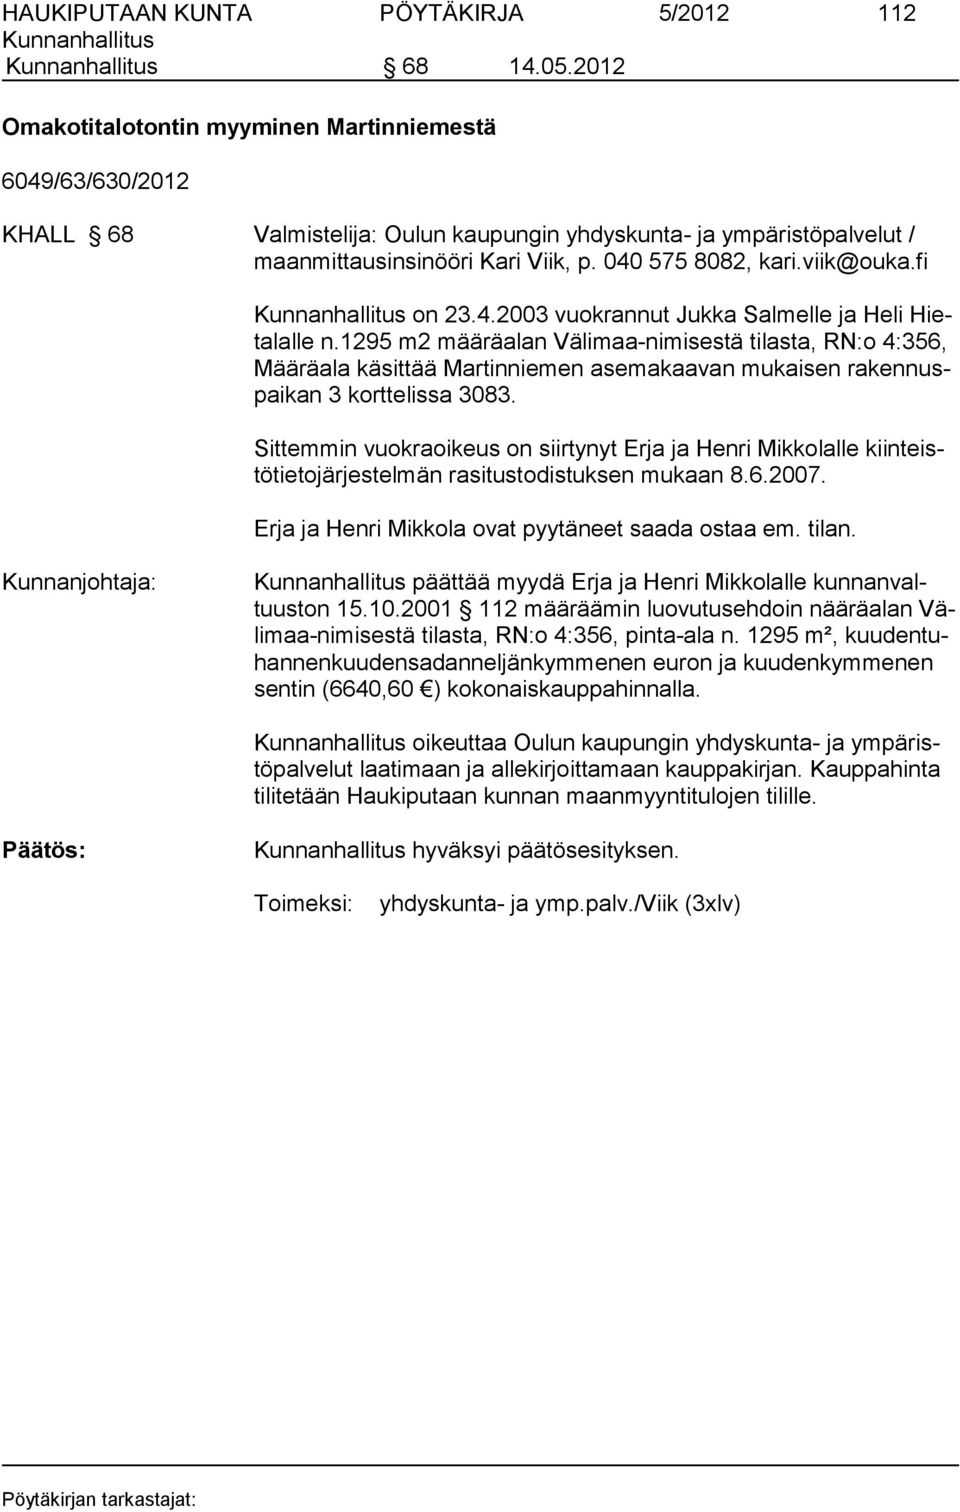 viik@ouka.fi on 23.4.2003 vuokrannut Jukka Salmelle ja Heli Hietalalle n.